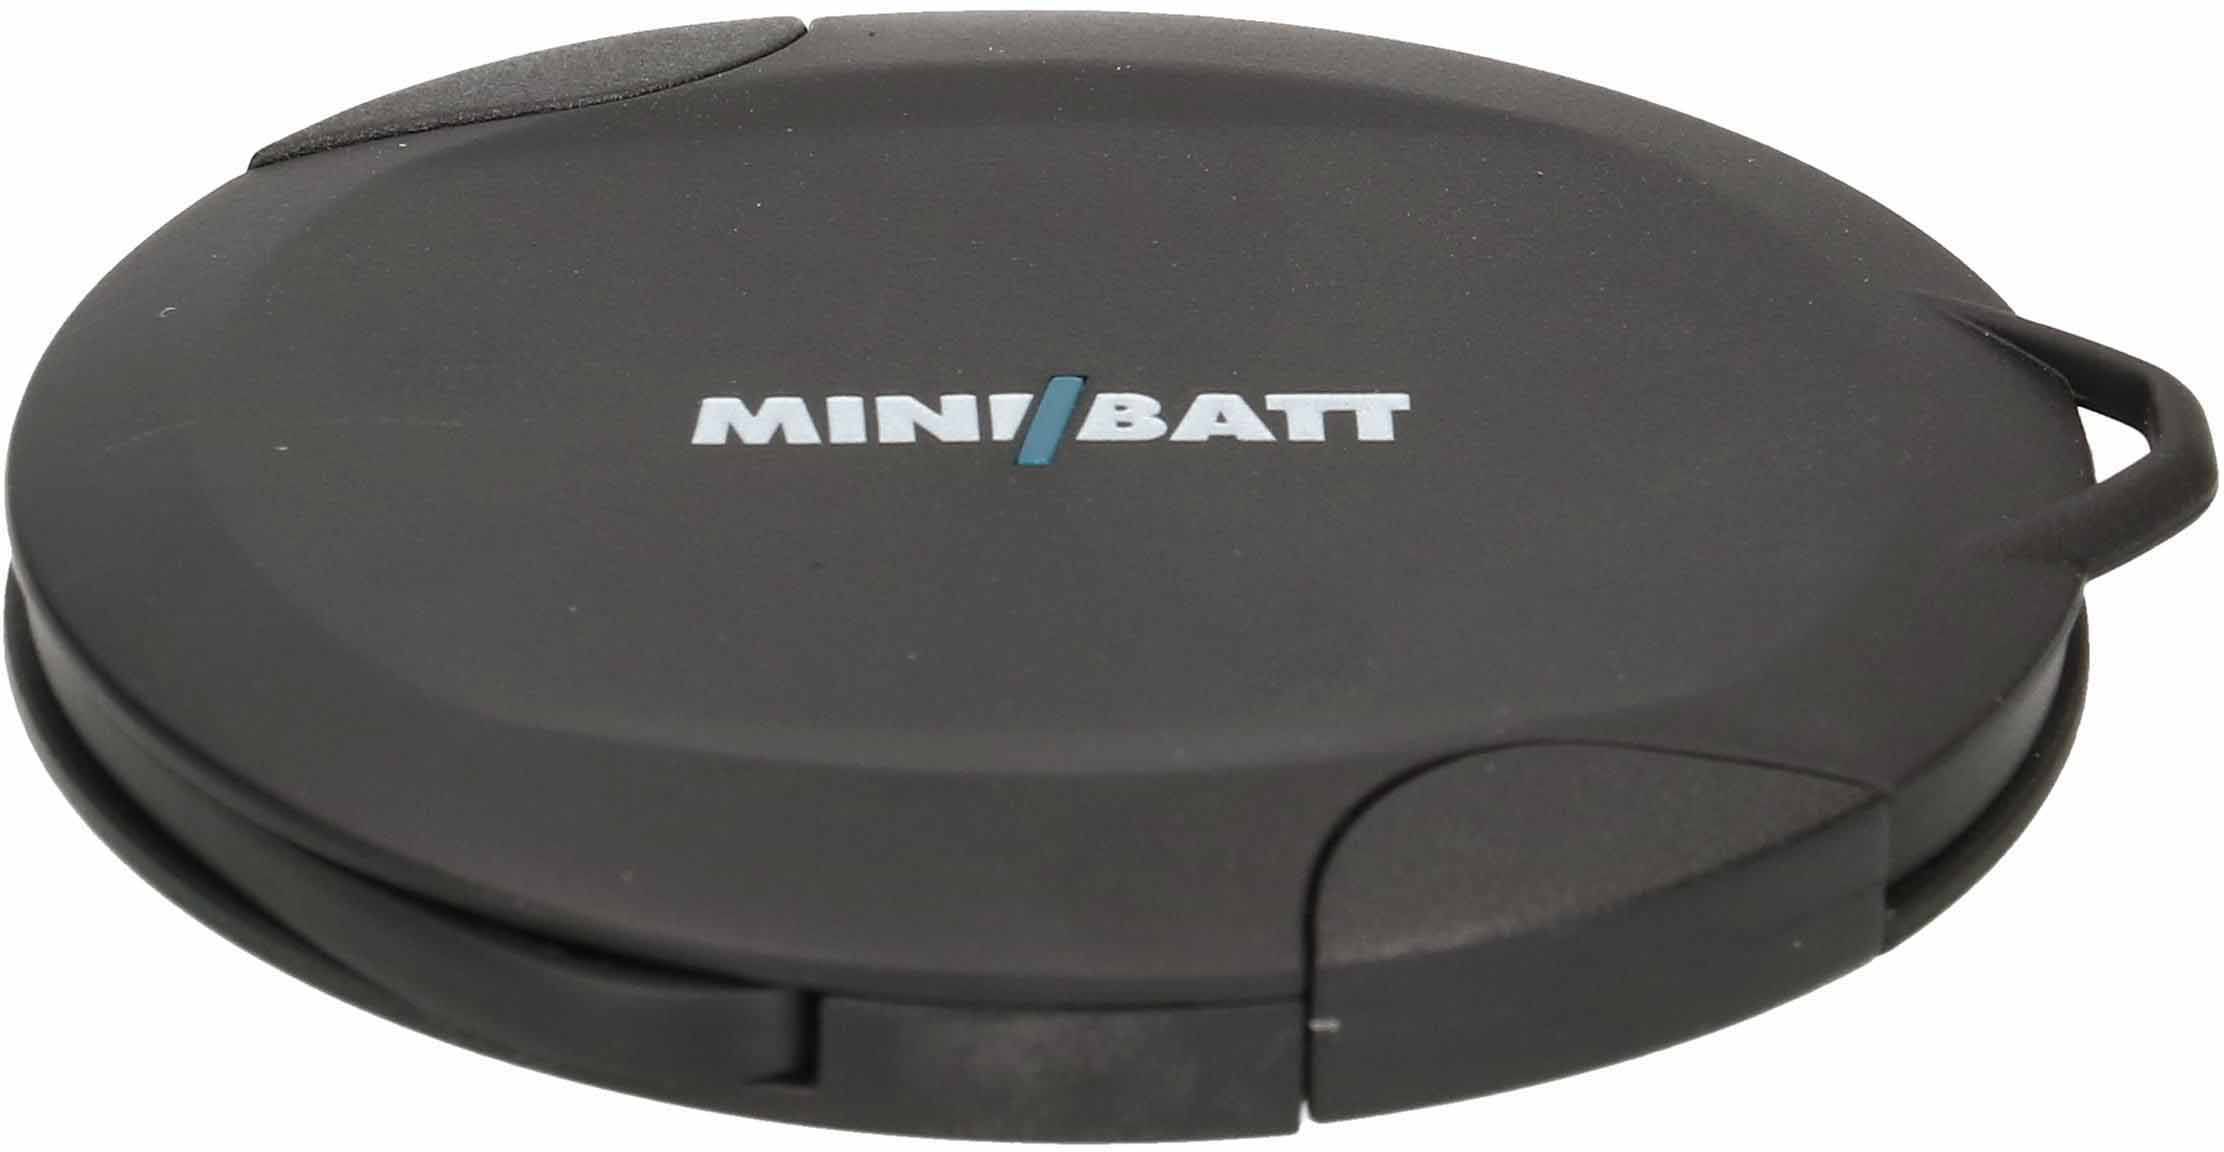 MiniBatt Wireless PowerRING